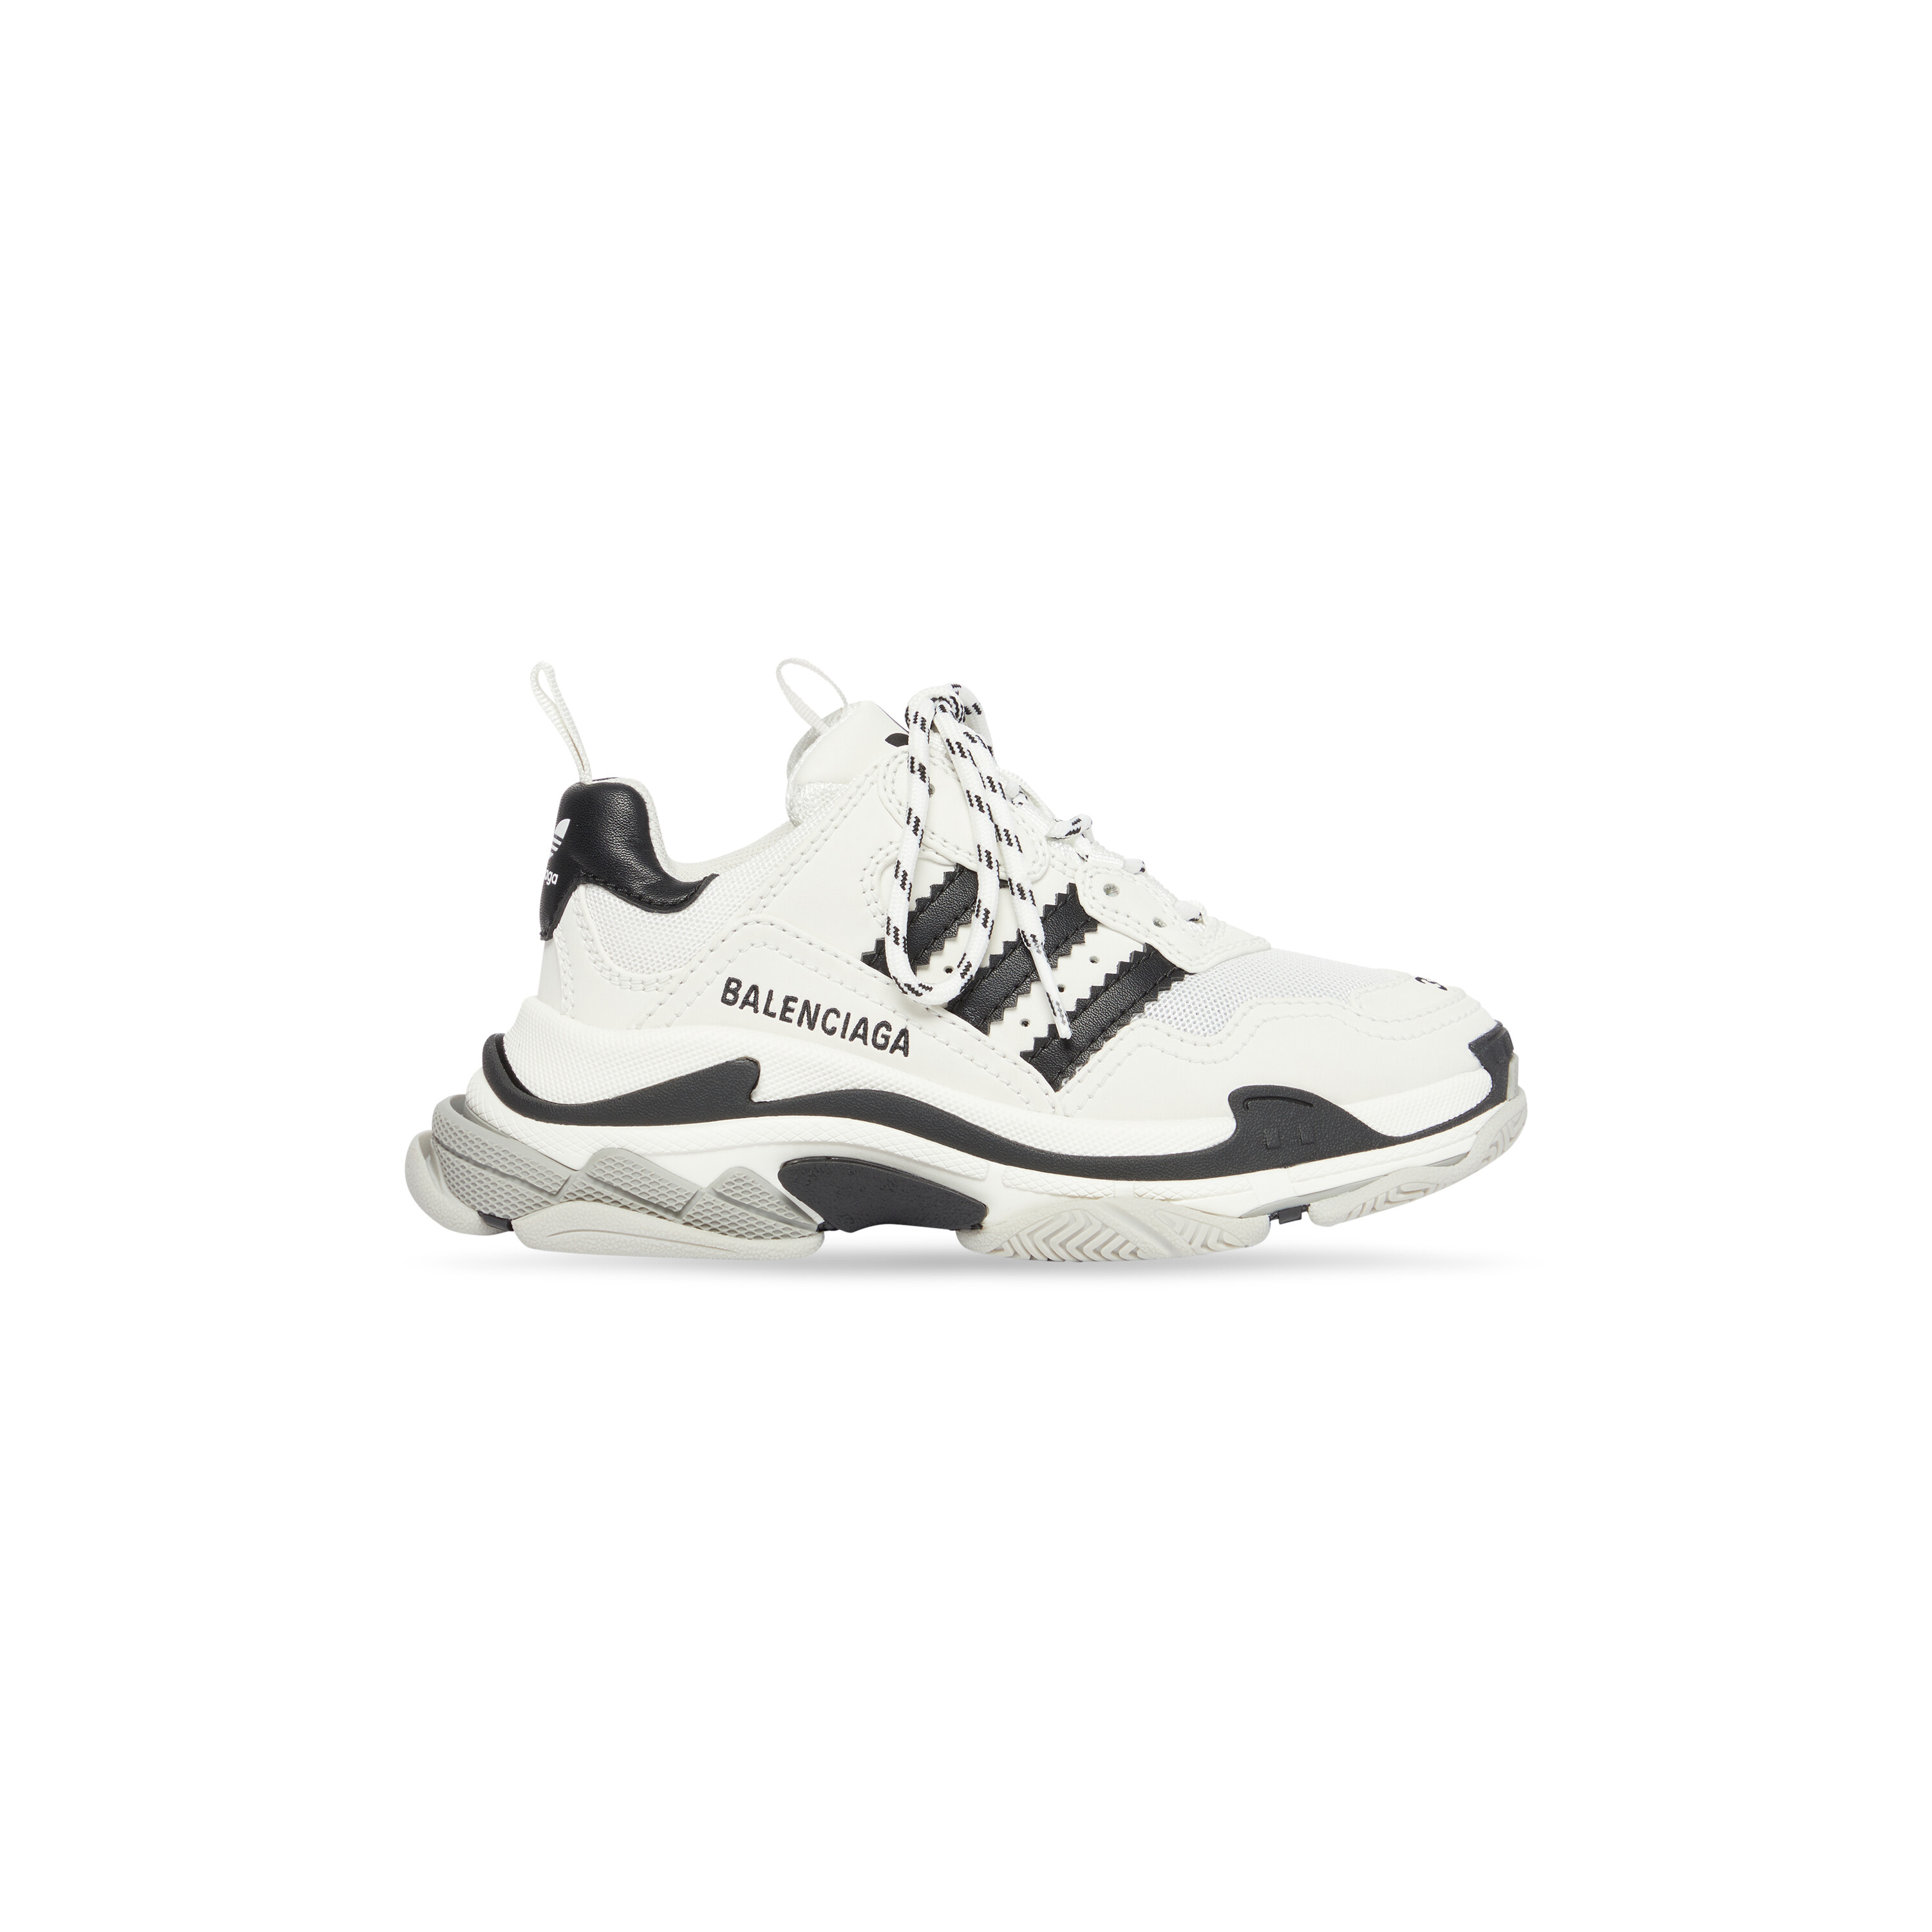 adidas x Balenciaga Triple S Collab First Look Sneaker Leak